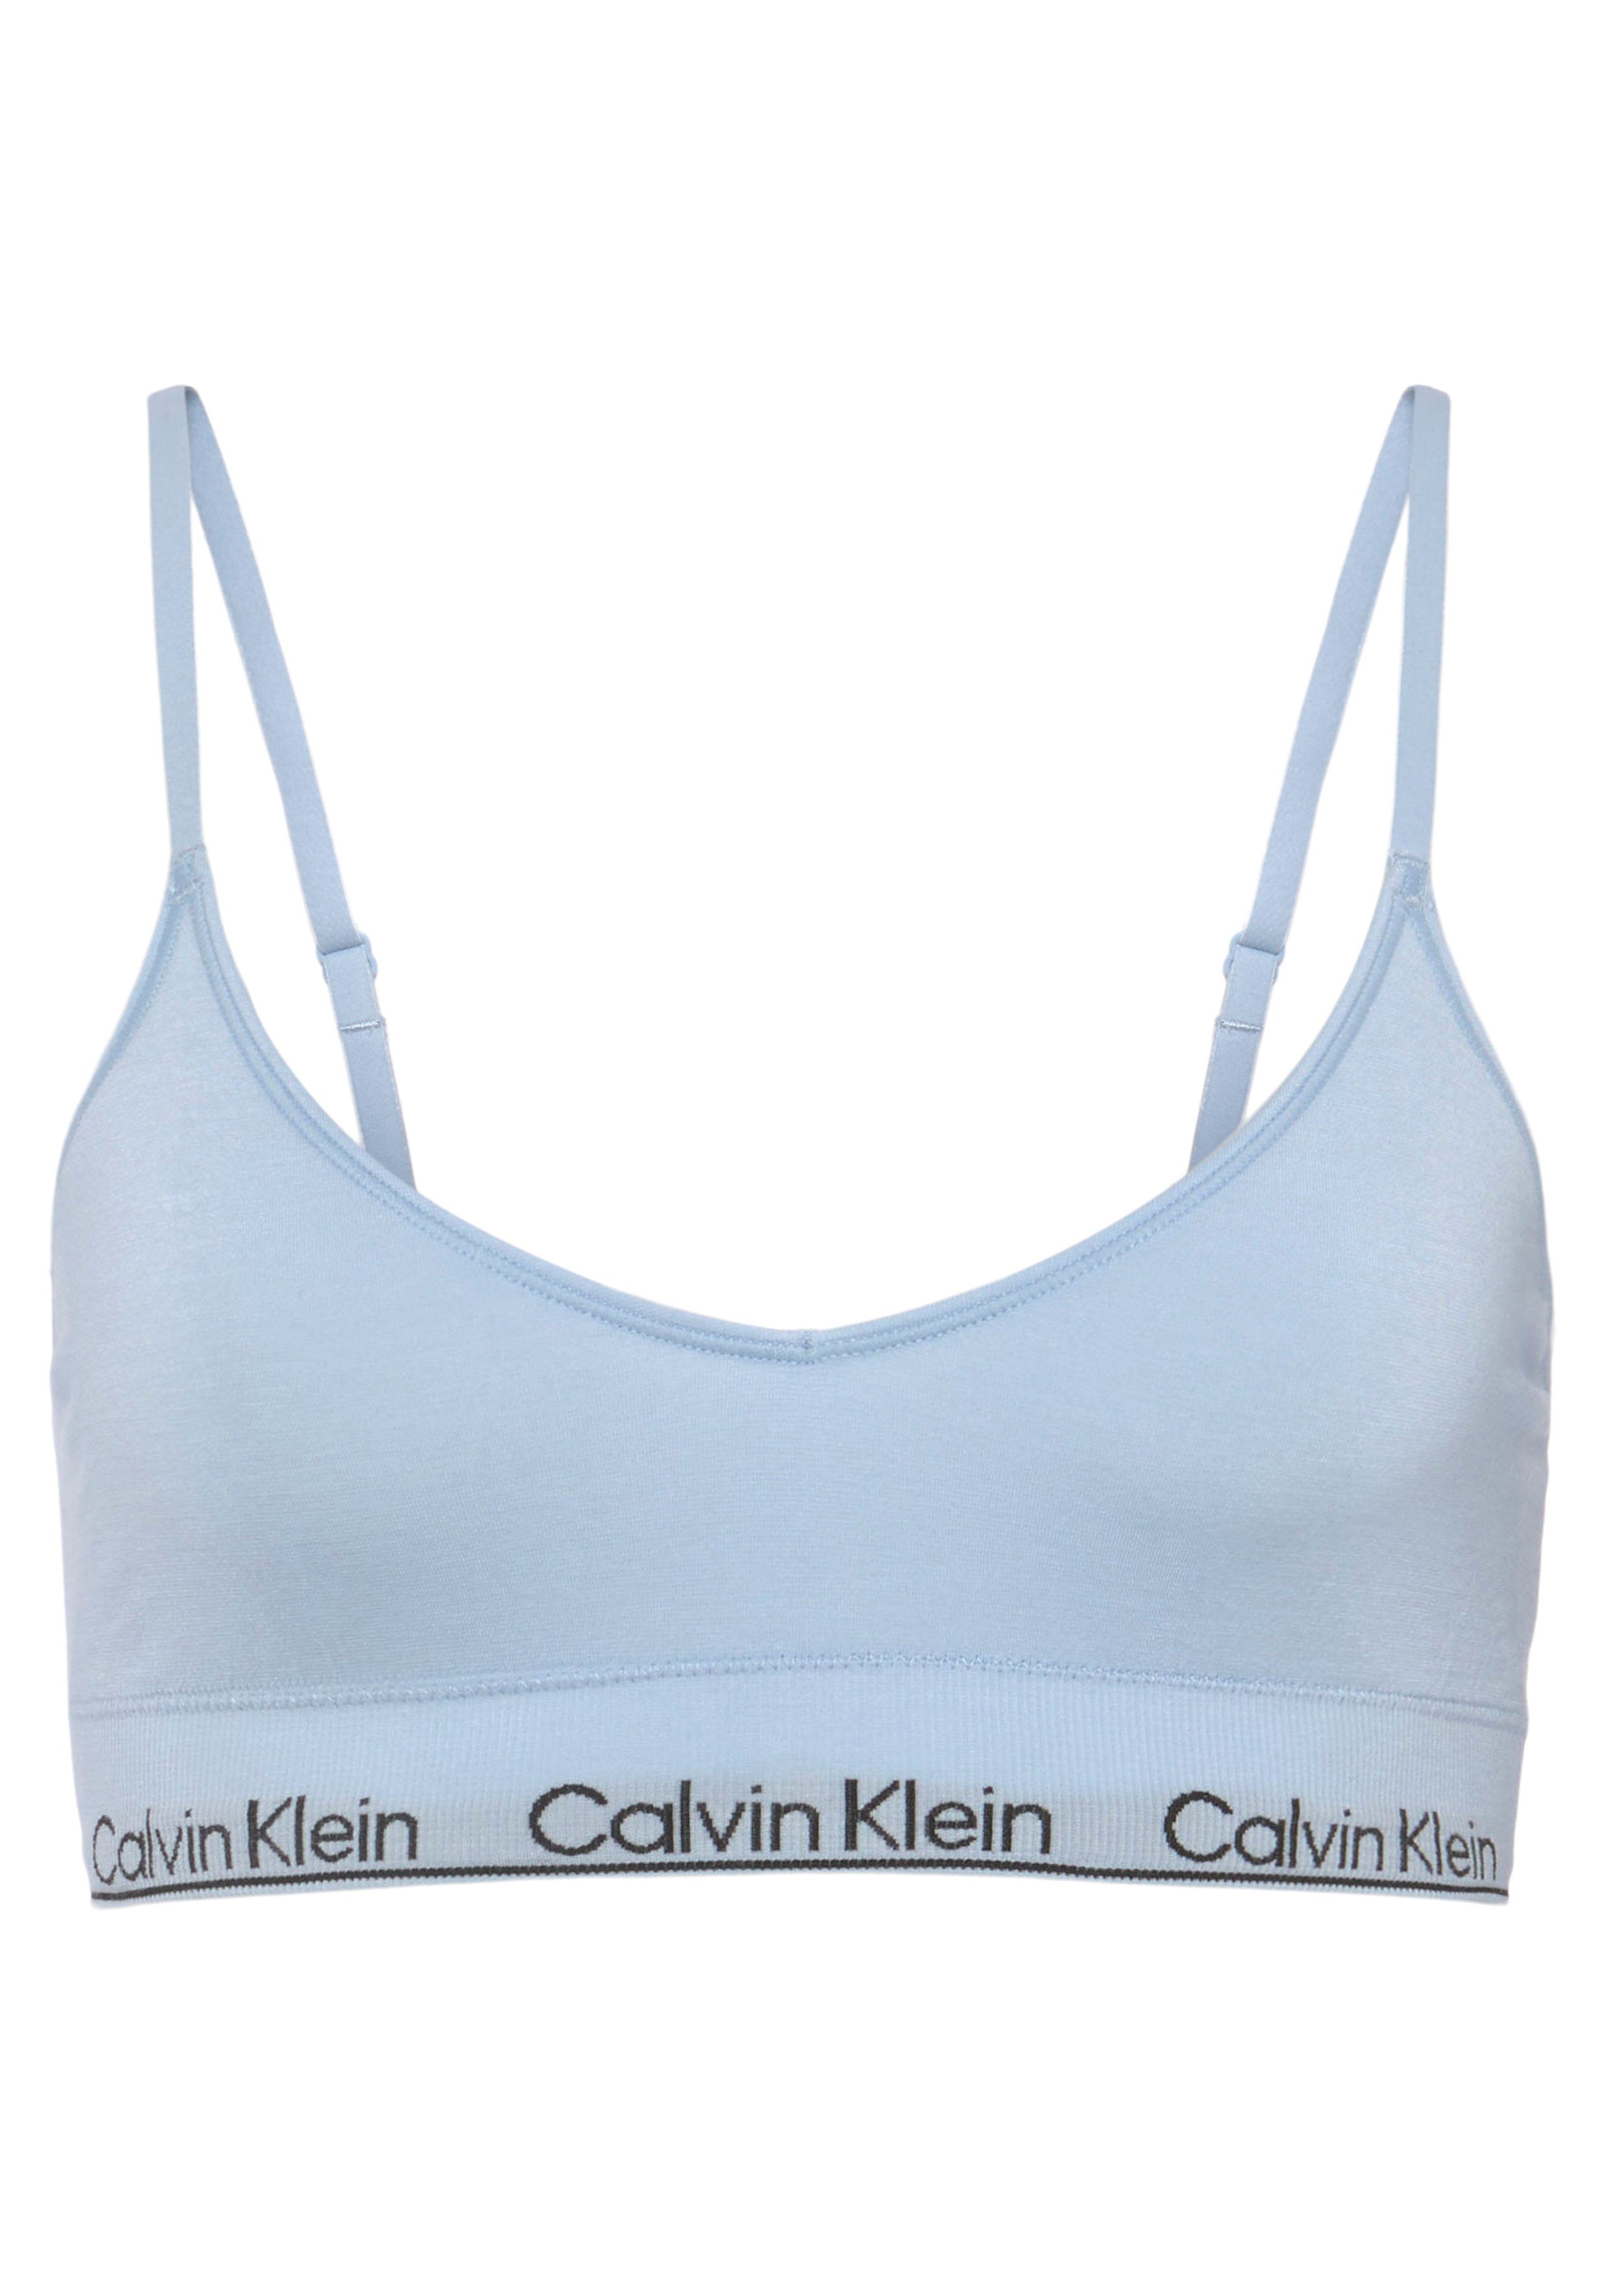 Calvin Klein Underwear Triangel-BH LGHT LINED TRIANGLE mit CK-Logoschriftzug hellblau